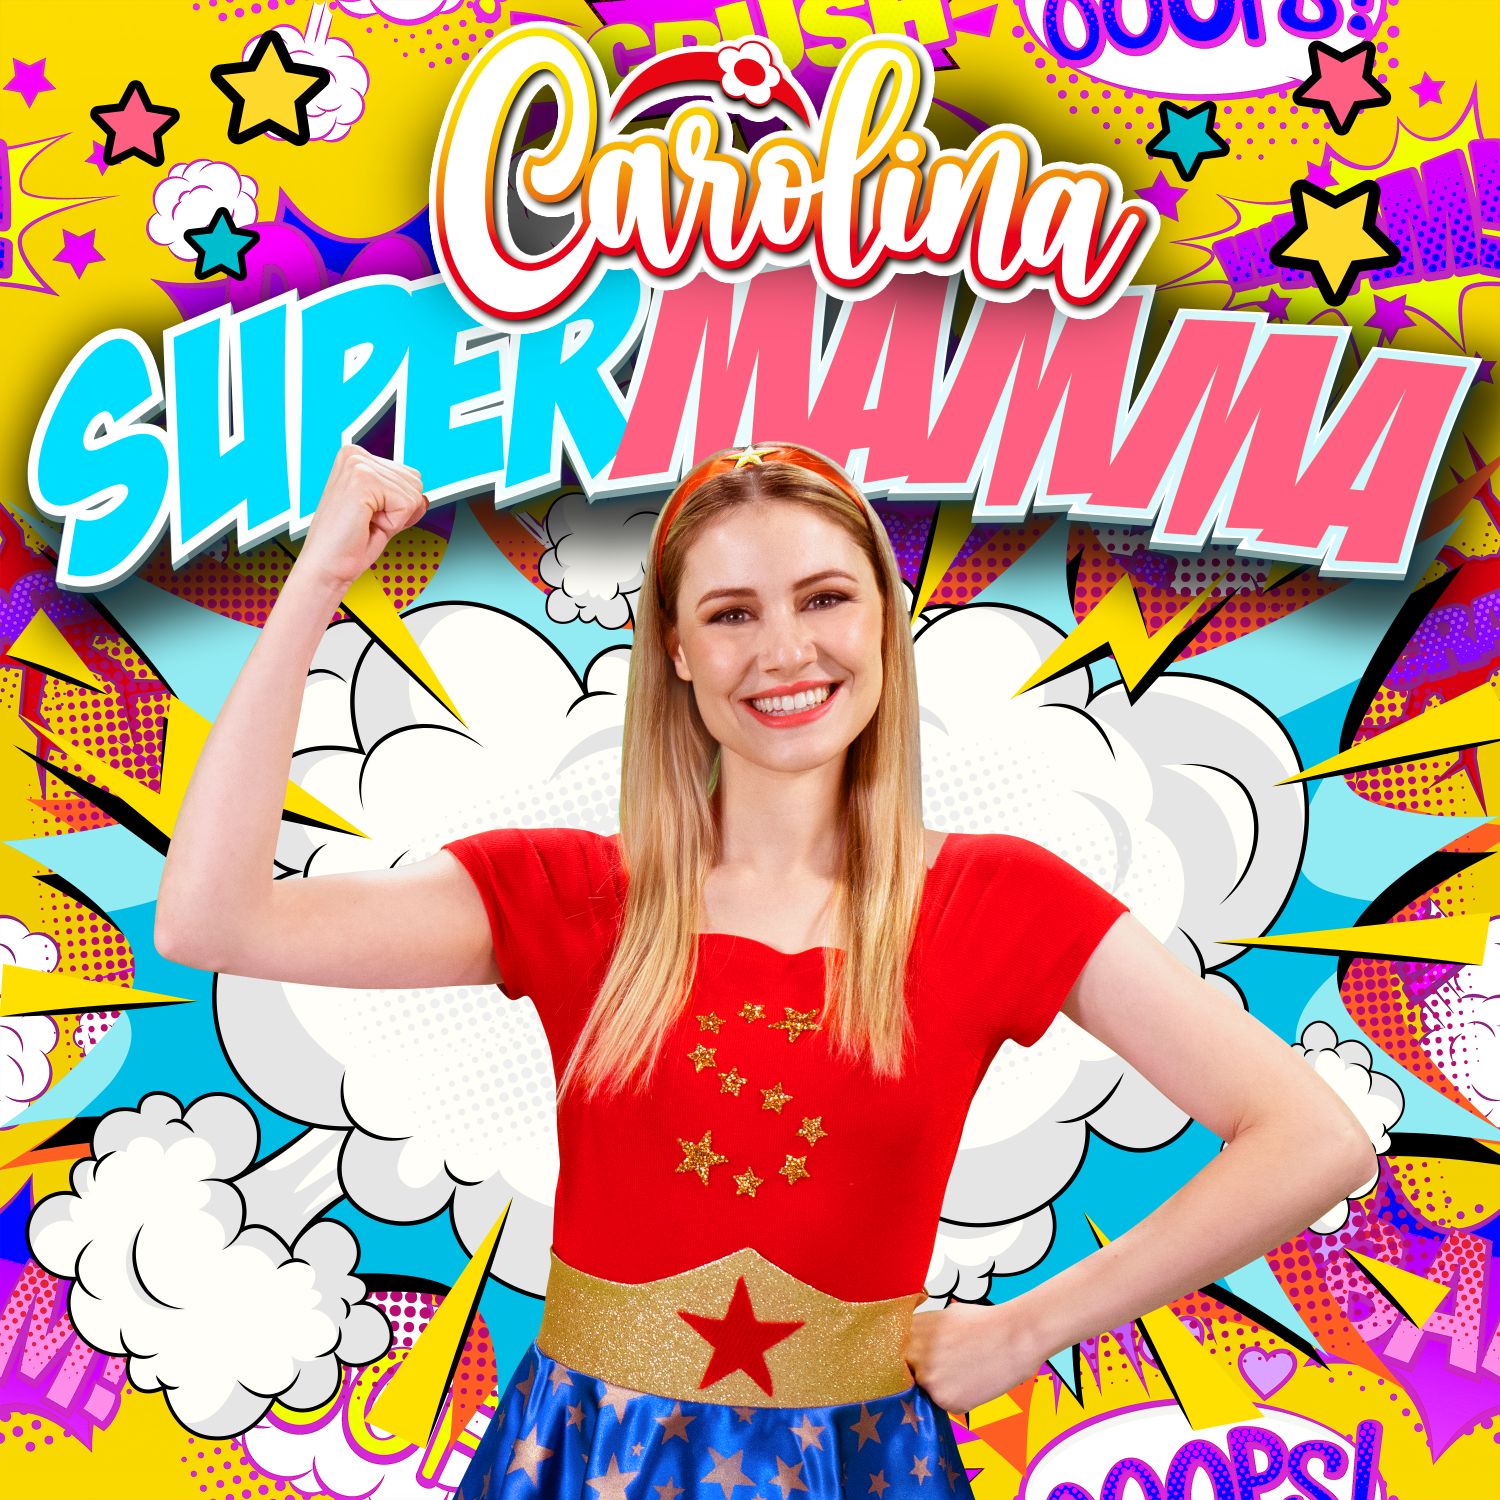 Carolina Benvenga da oggi online il nuovo video “Supermamma”, il brano perfetto da dedicare a tutte le mamme e da ballare coi bambini!